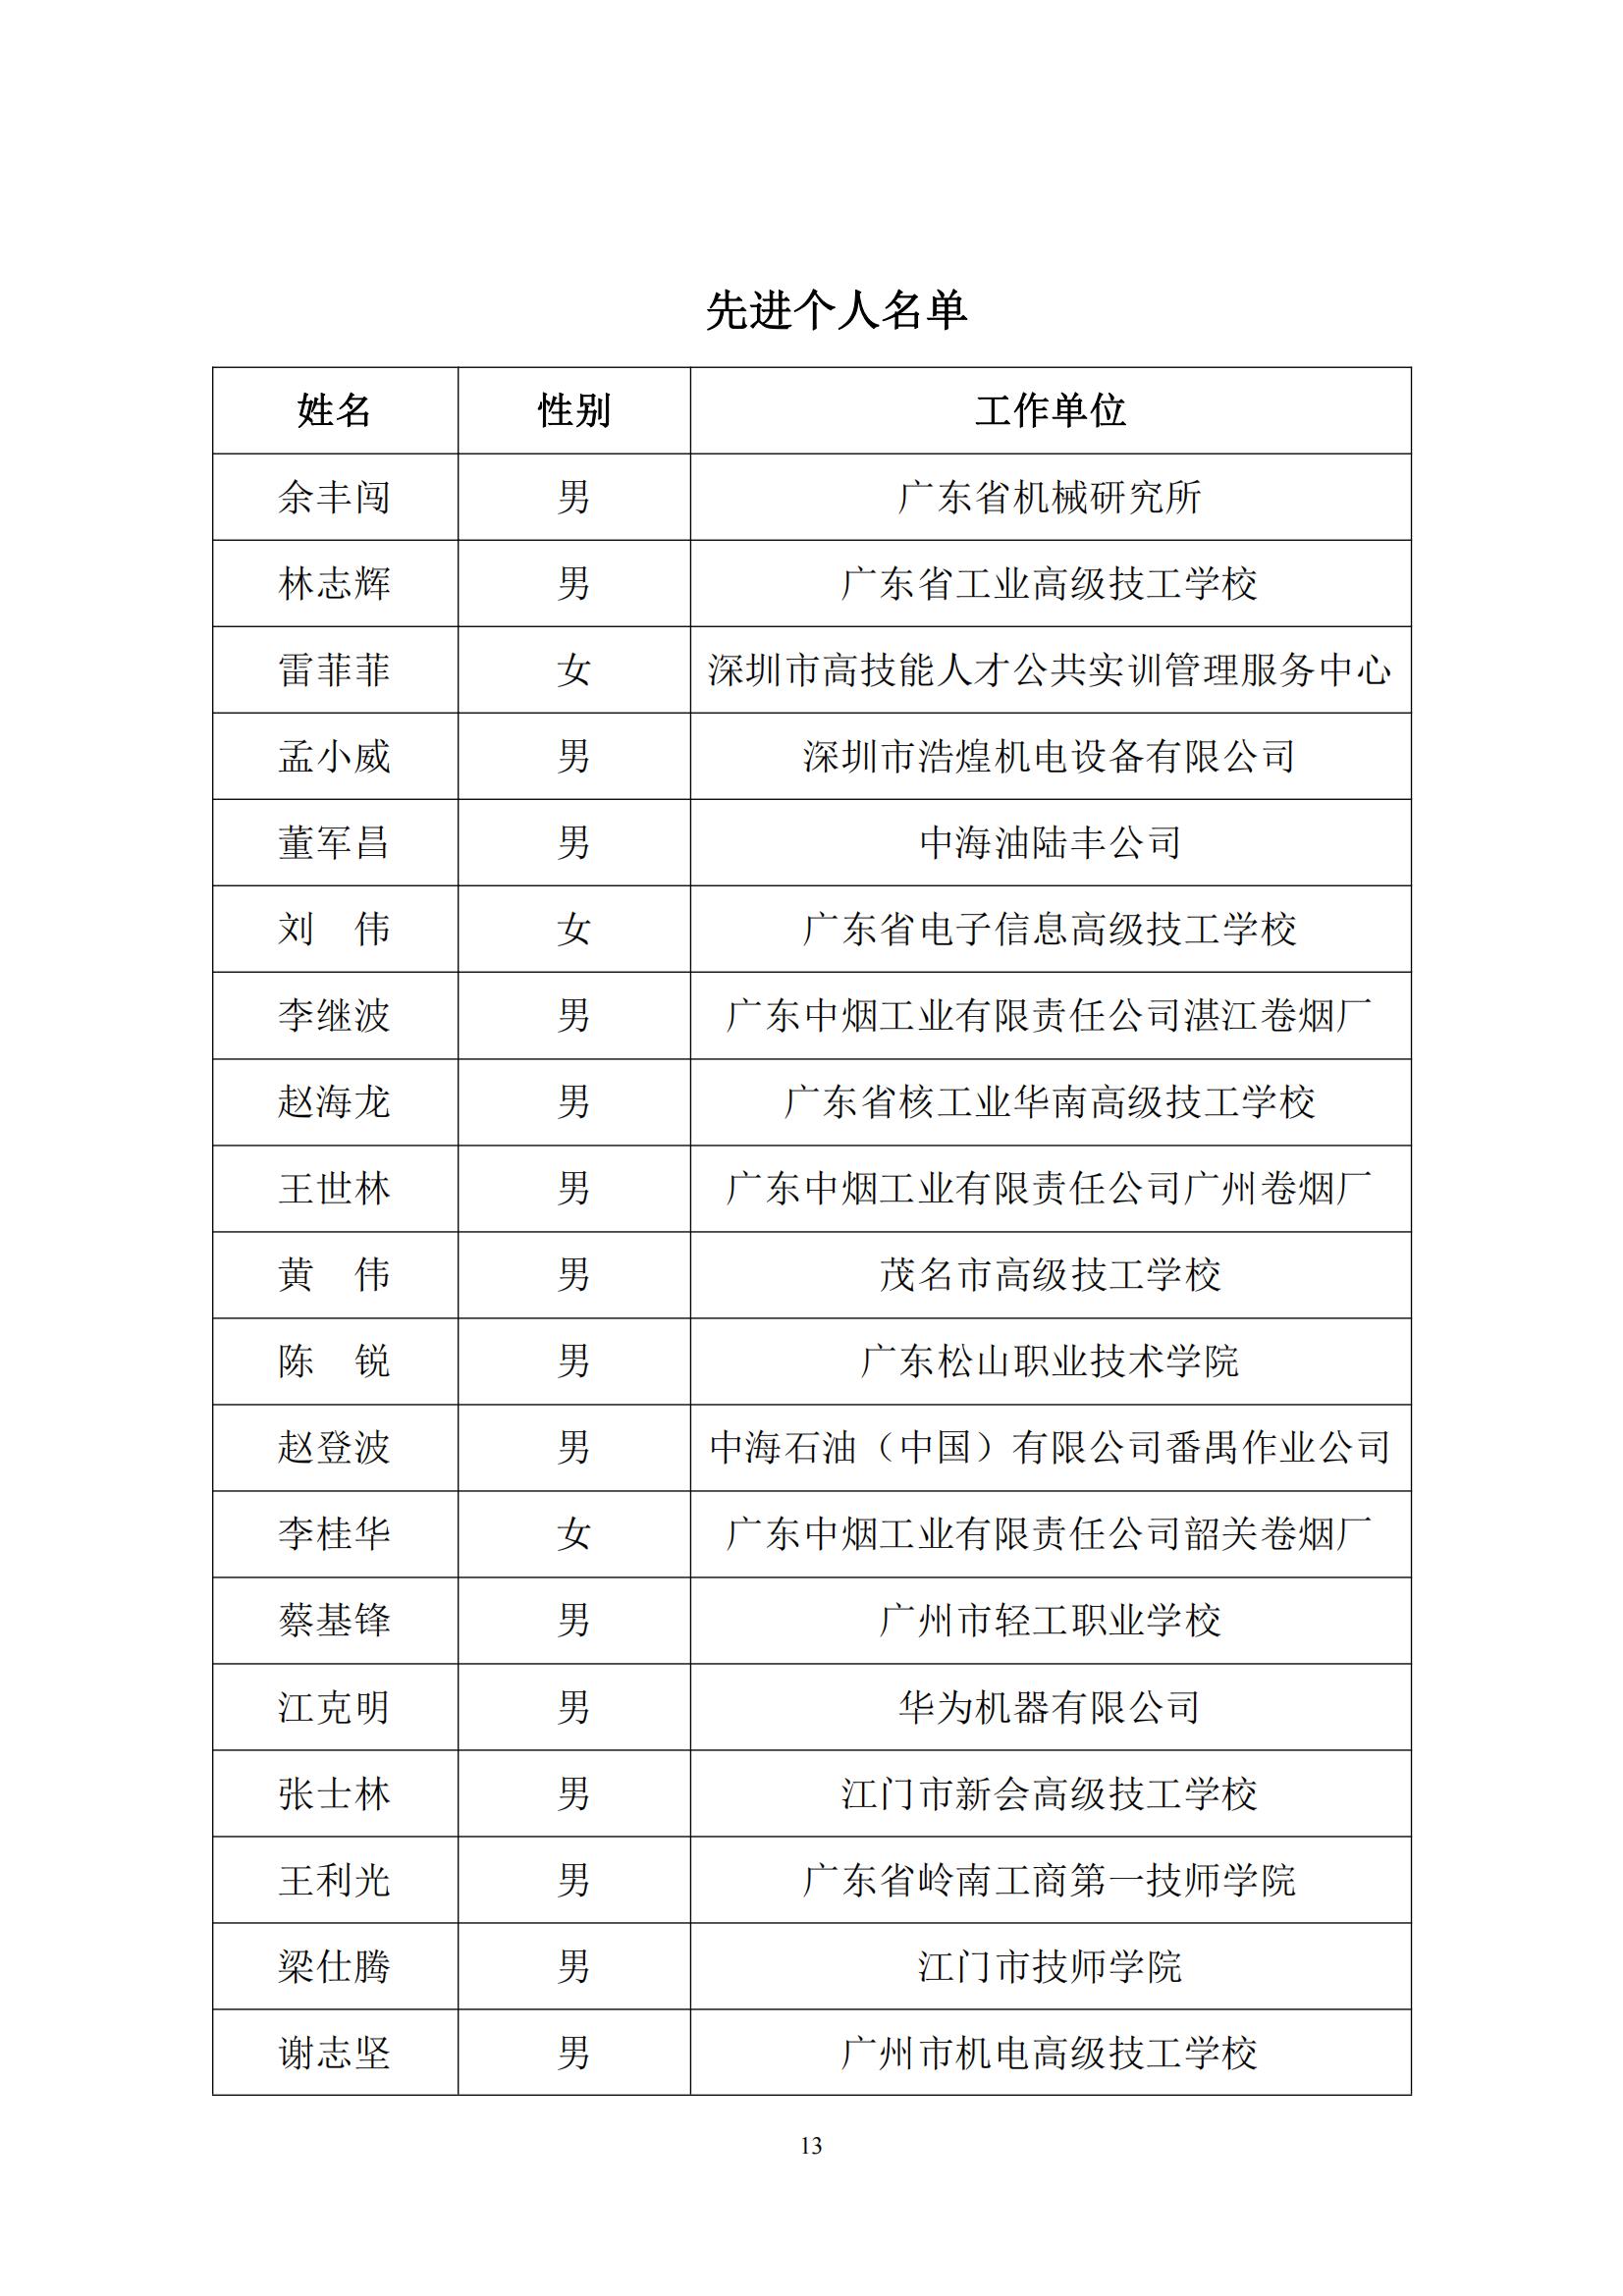 2016 年中国技能大赛——广东省可编程序控制系统设计师（工业机器人技术应用）职业技能竞赛_12.jpg